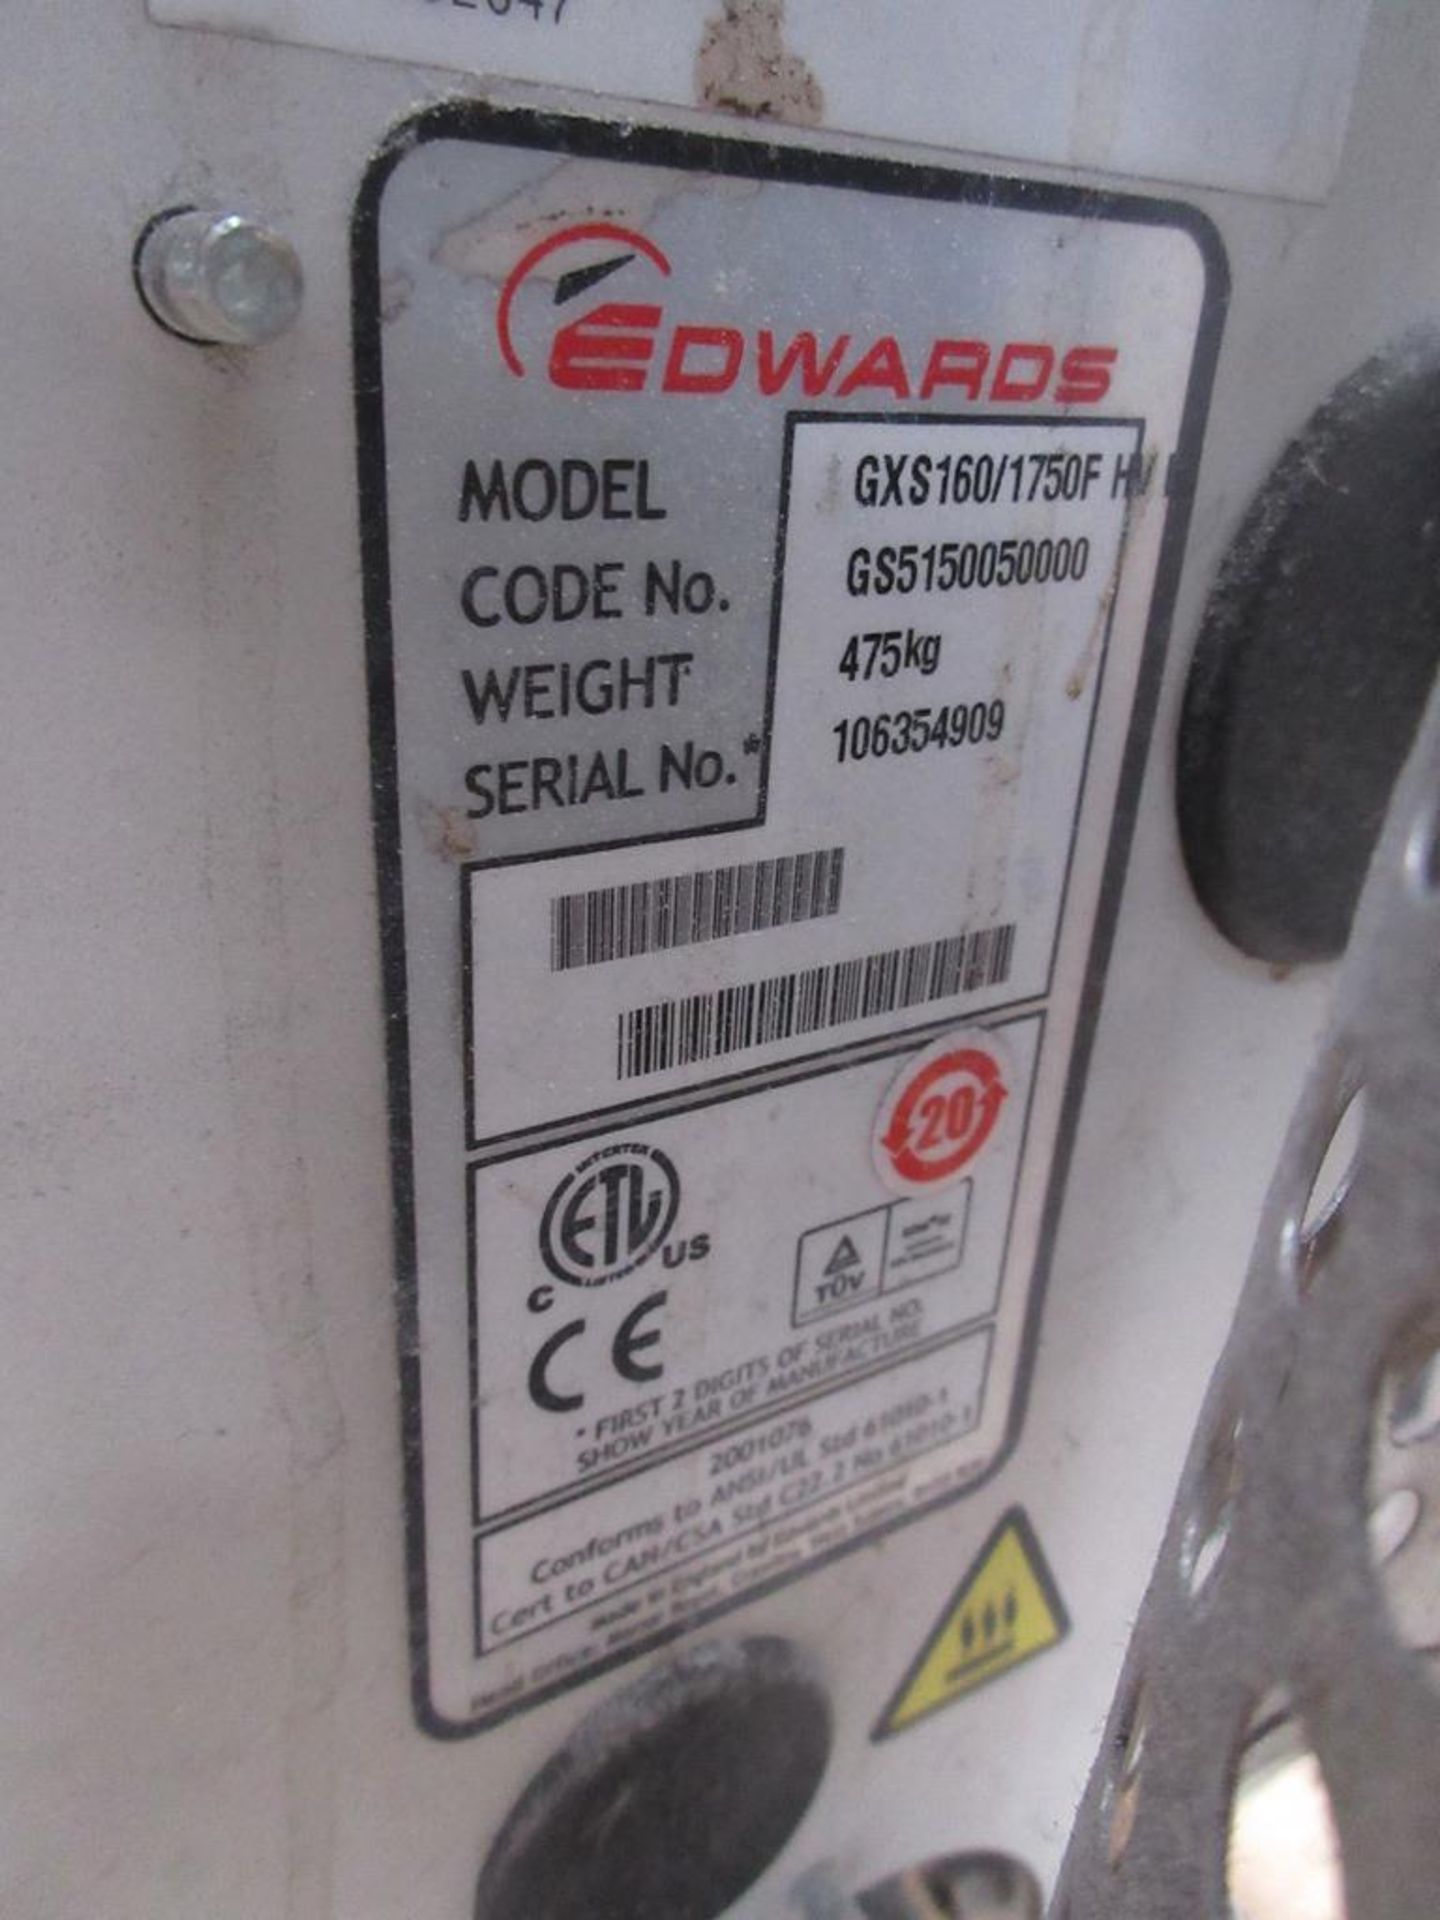 Edwards GX3 160/1750 vacuum pump, serial no. 106354909 (2010) - Image 3 of 3